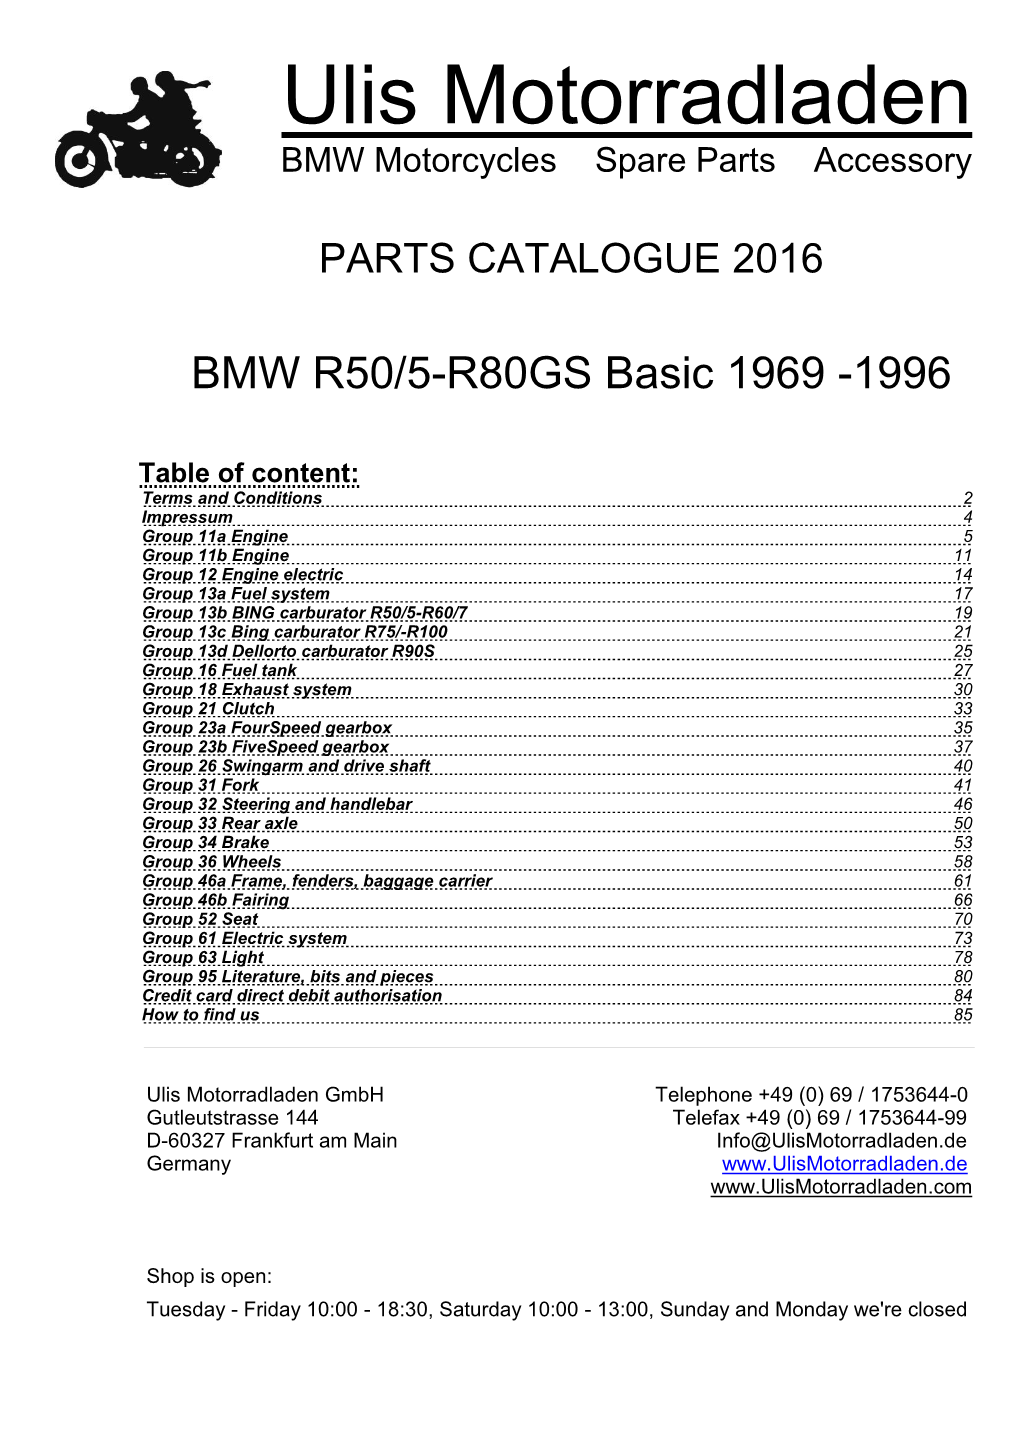 Parts Catalogue BMW R50/5-R80GS Basic